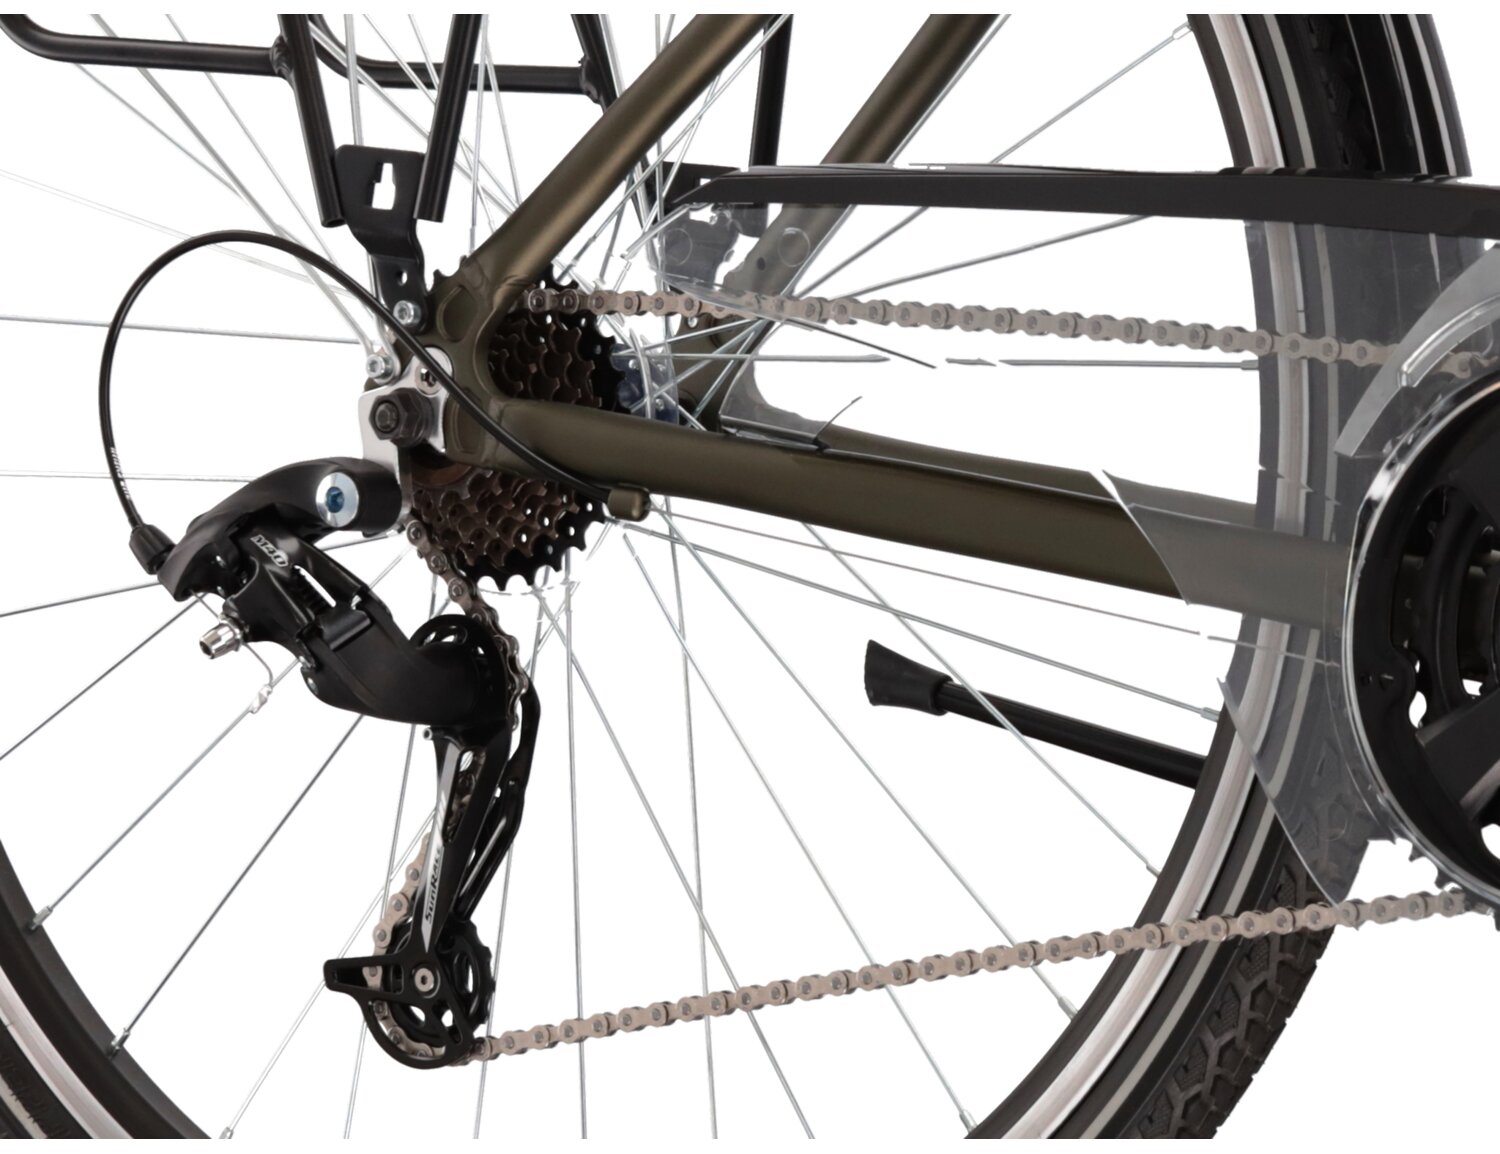  Tylna siedmiobiegowa przerzutka Sunrace RDM41 oraz hamulce v-brake w rowerze trekkingowym KROSS Trans 2.0 SR 